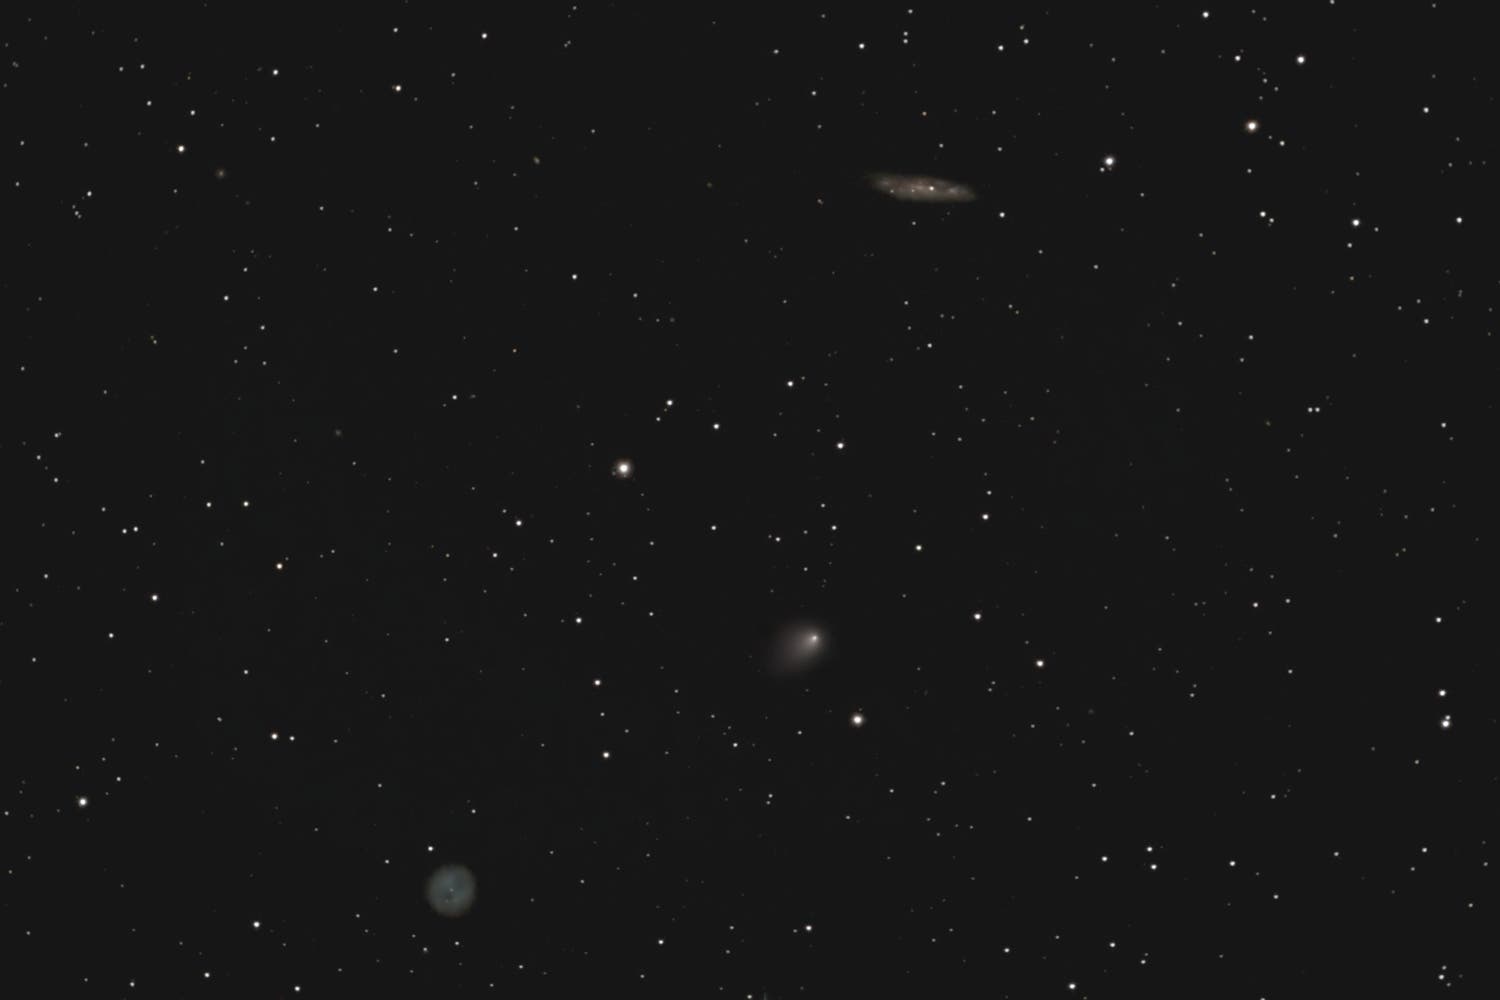 Komet C/2014 S2 PANSTARRS bei M97 und M108